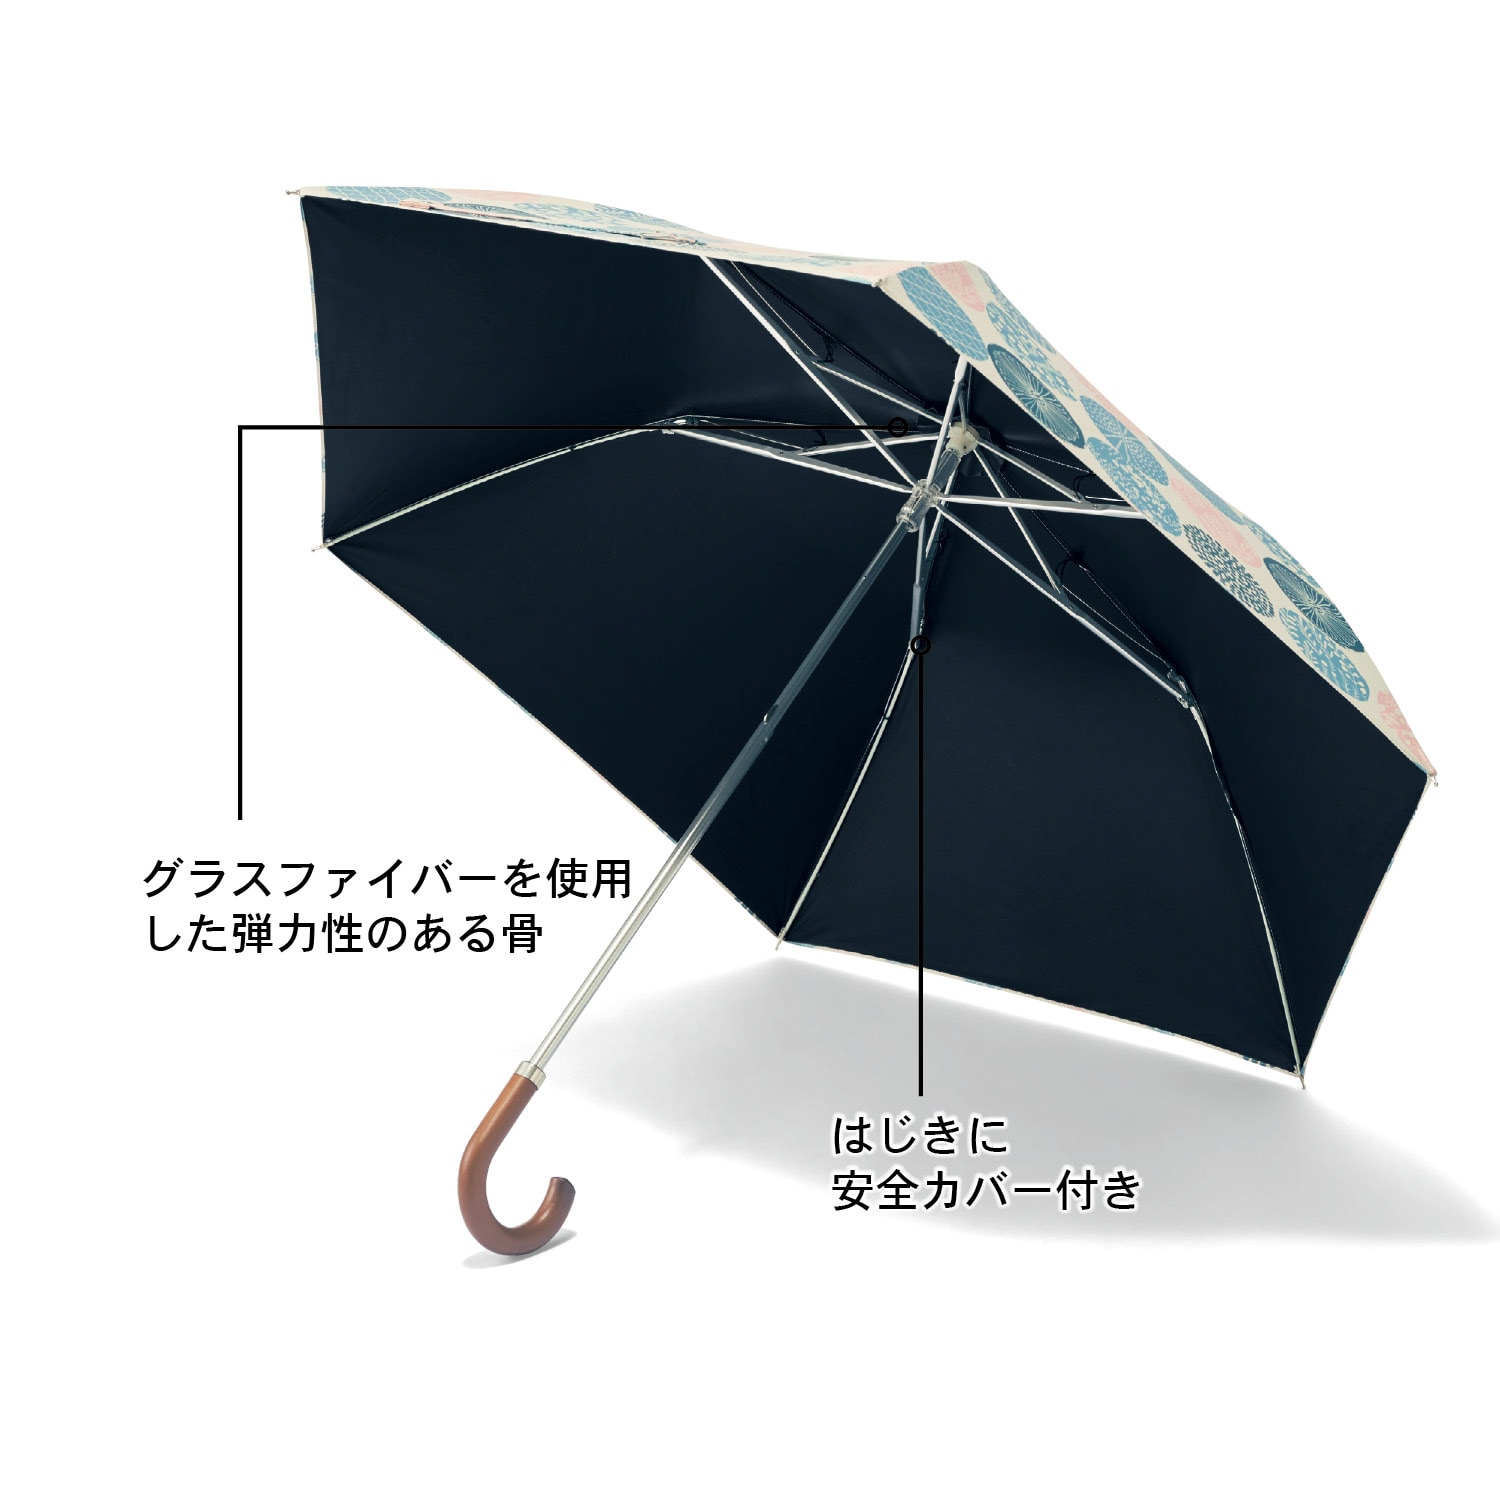 １級遮光折りたたみ晴雨兼用日傘 「ミニラボ」